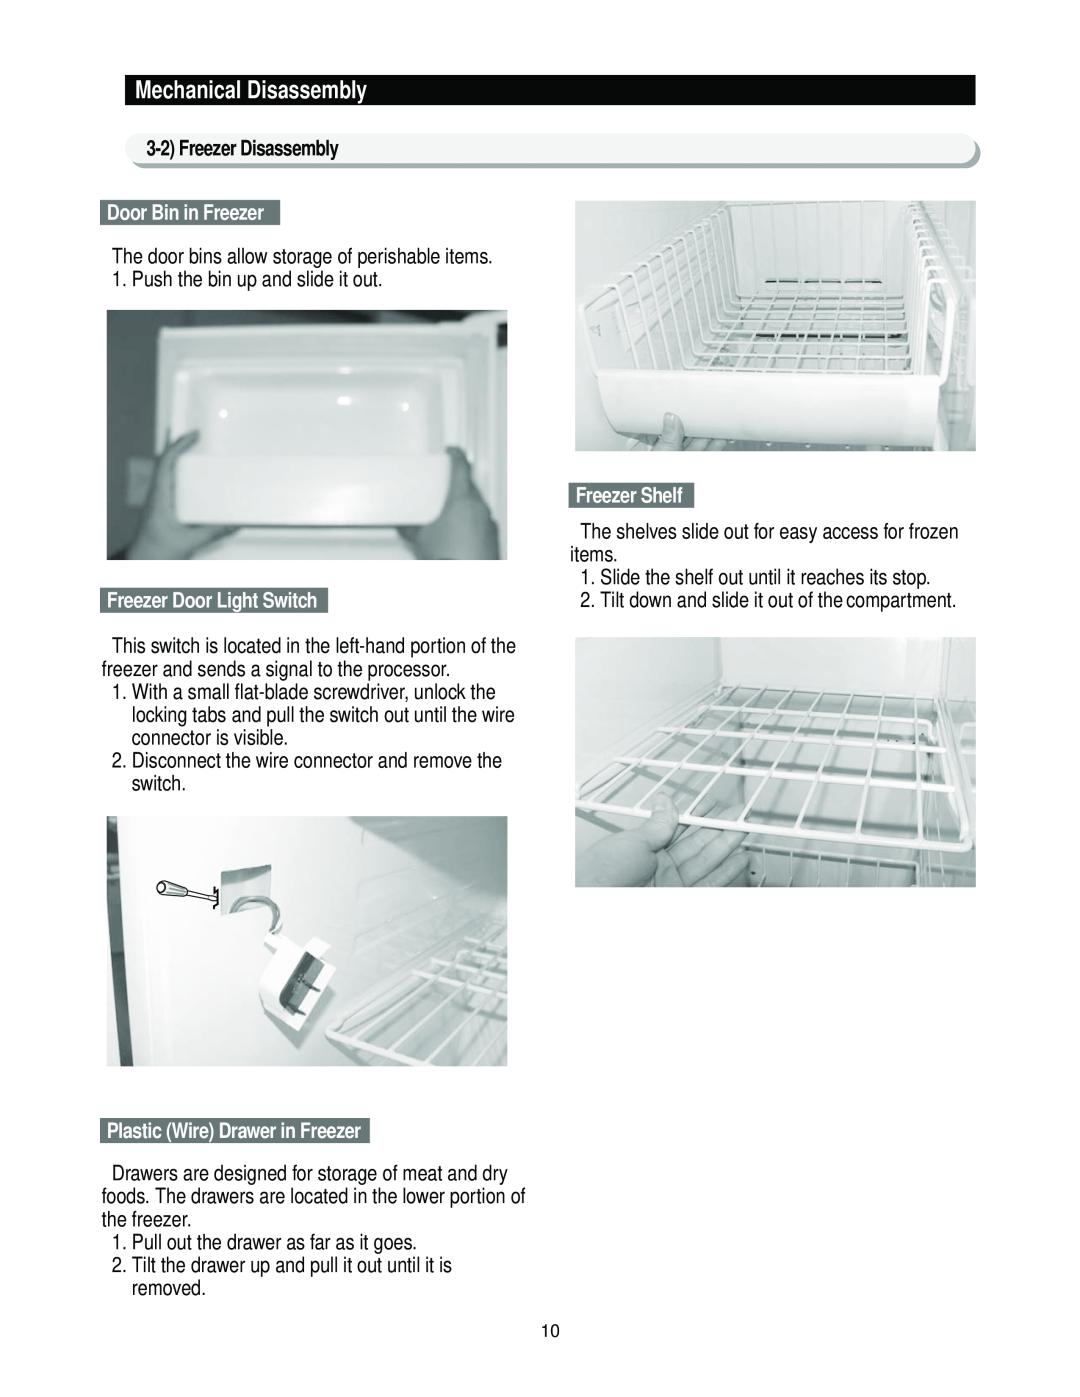 Samsung RS2*3* manual Door Bin in Freezer, Freezer Door Light Switch, Plastic Wire Drawer in Freezer, Freezer Shelf 